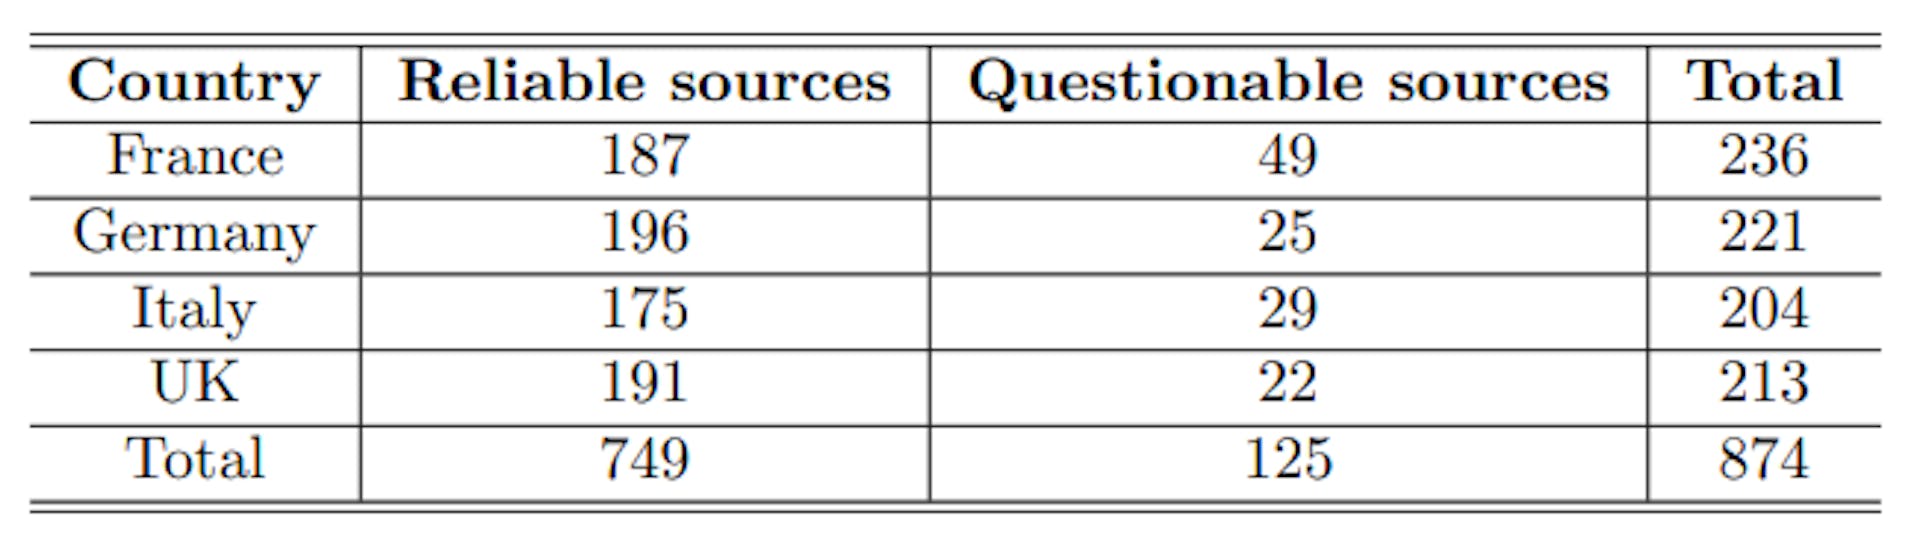 Tabelle 1: Aufschlüsselung des NewsGuard-Nachrichtenquellen-Datensatzes nach Land und Zuverlässigkeit